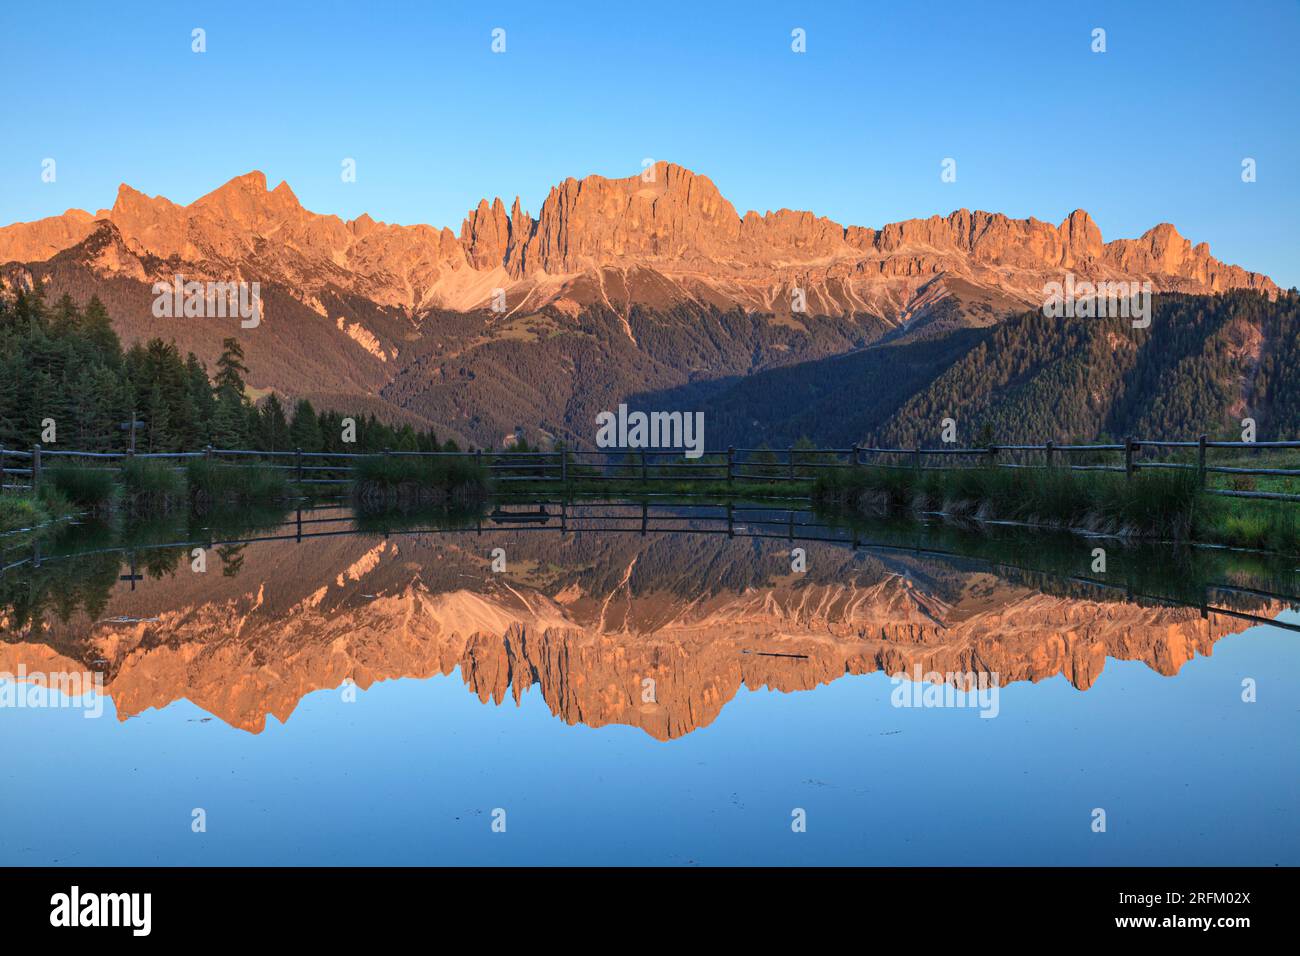 Wuhnleger Weiher, Teich, vor Rosengarten, Tiers, Südtirol, Italien Stockfoto